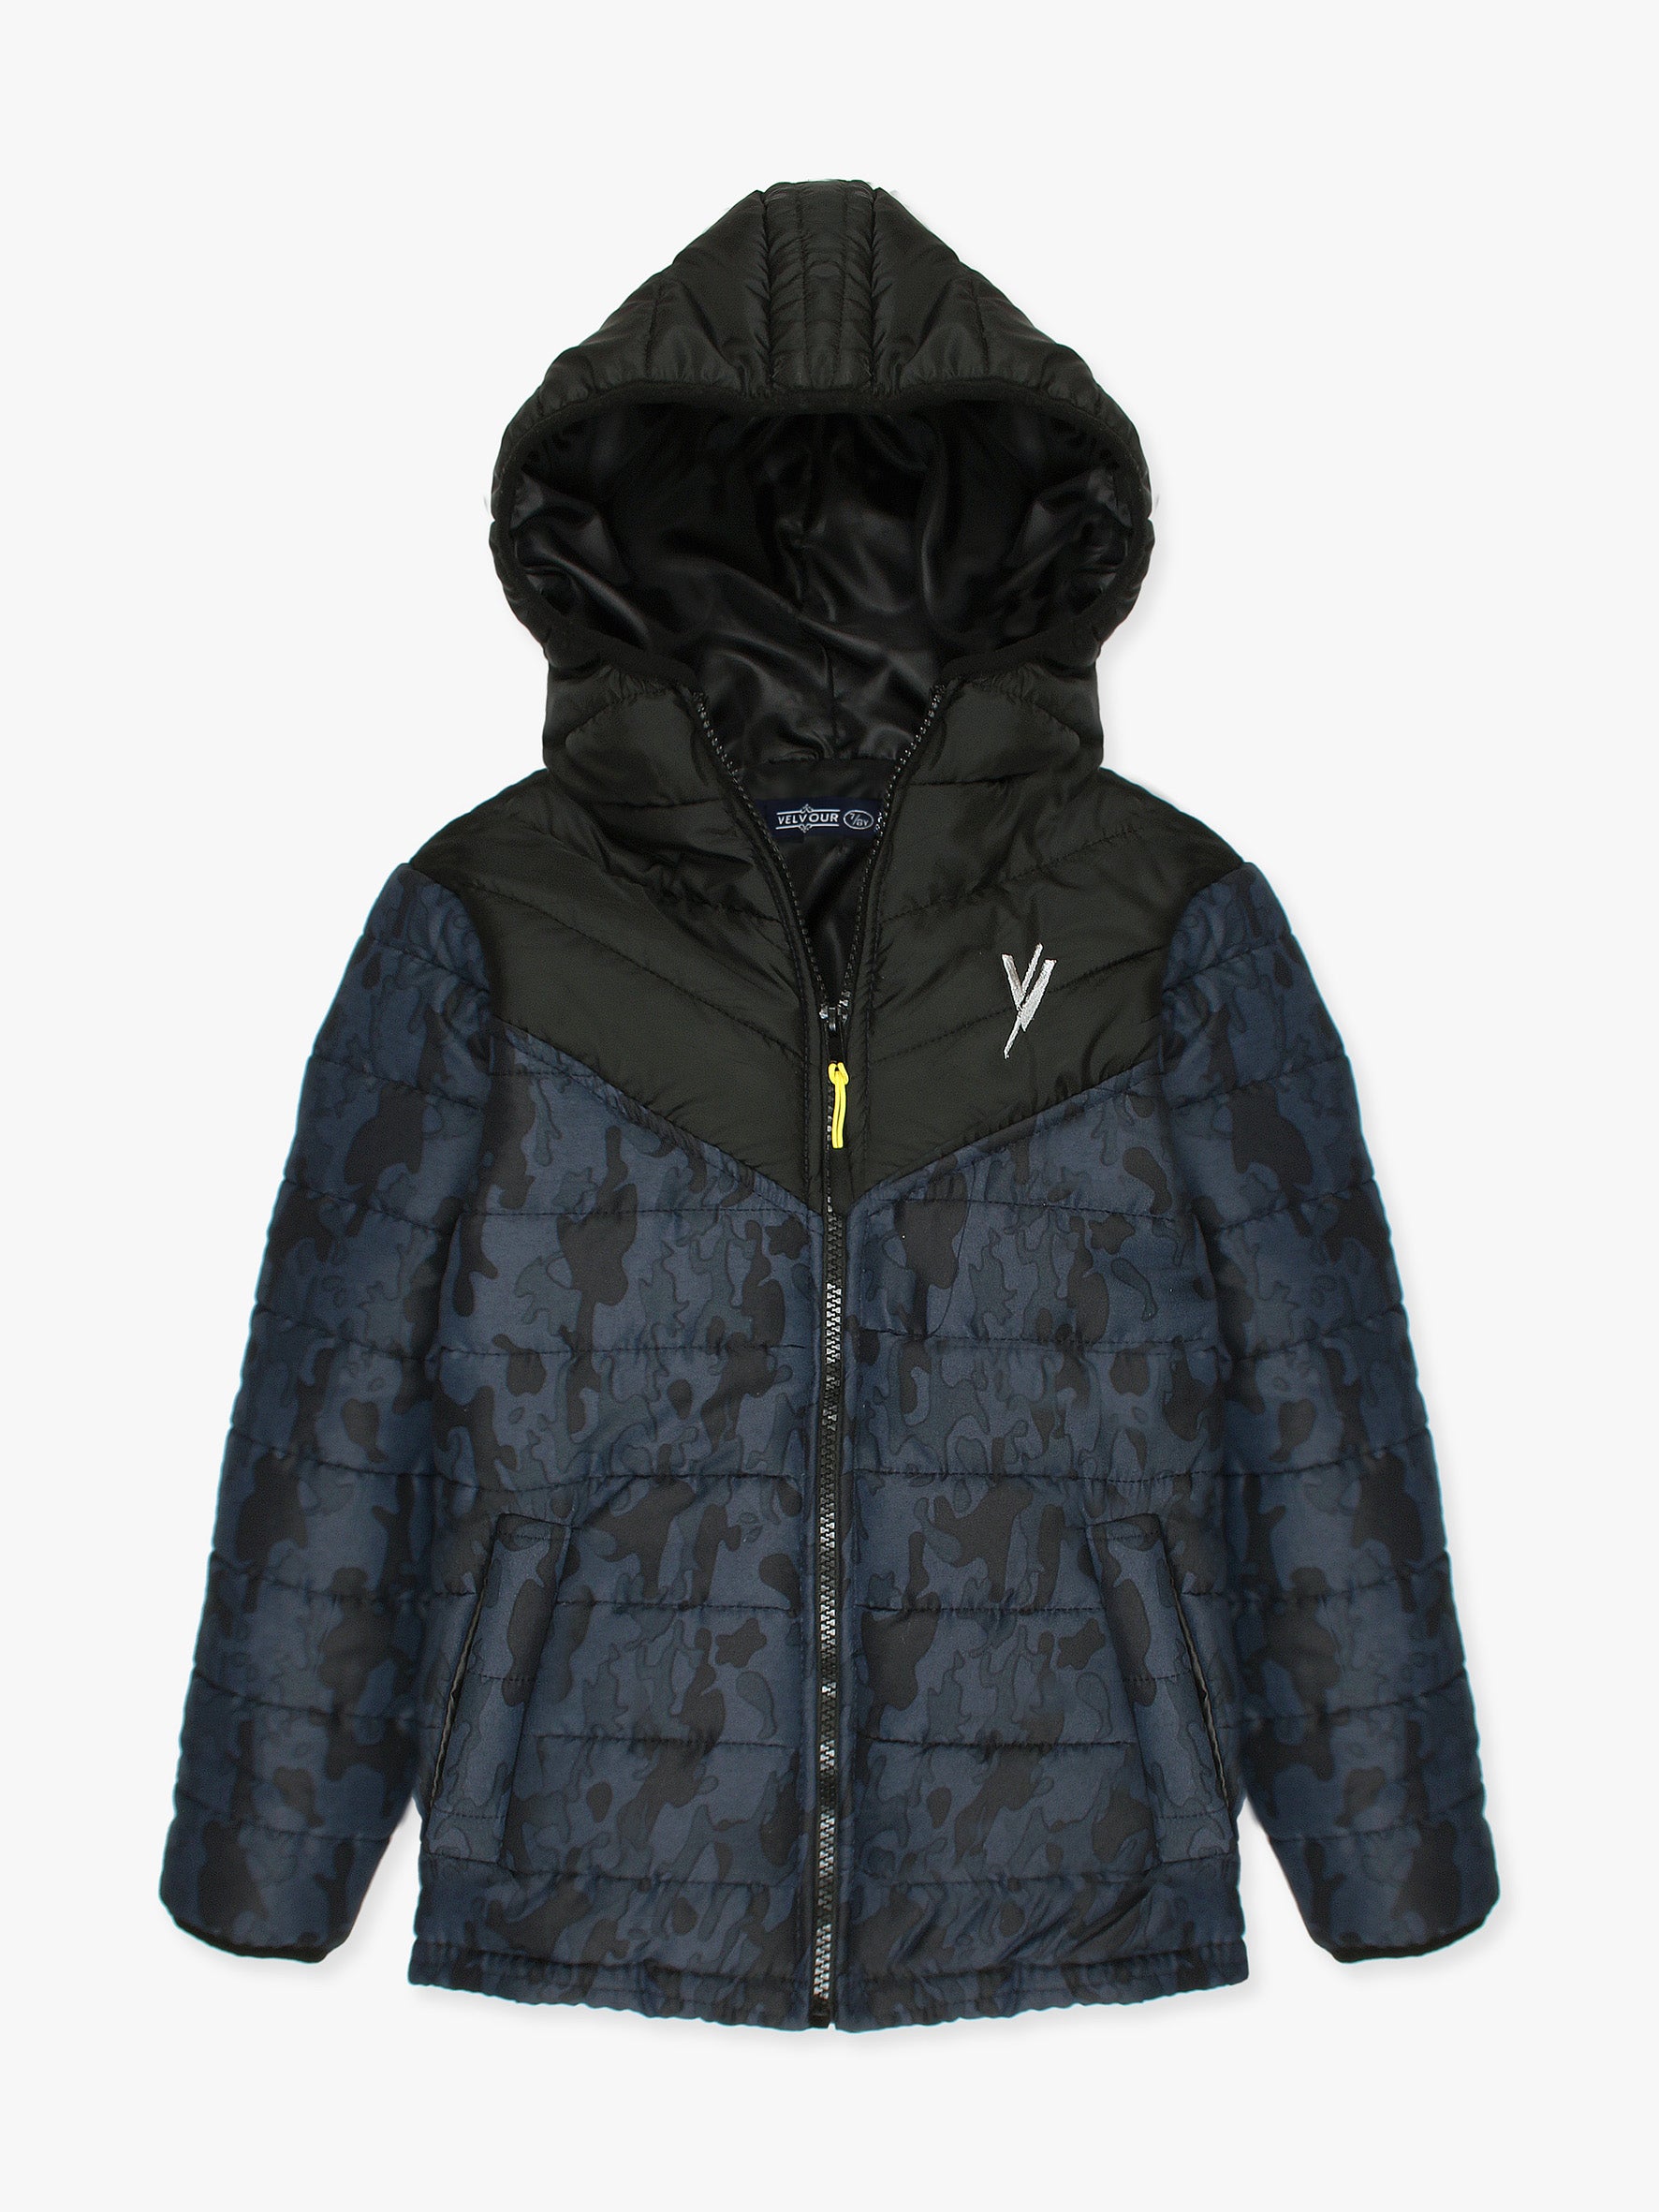 Full Sleeves Hooded Puffer Jacket Boys & Girls VJ16-B